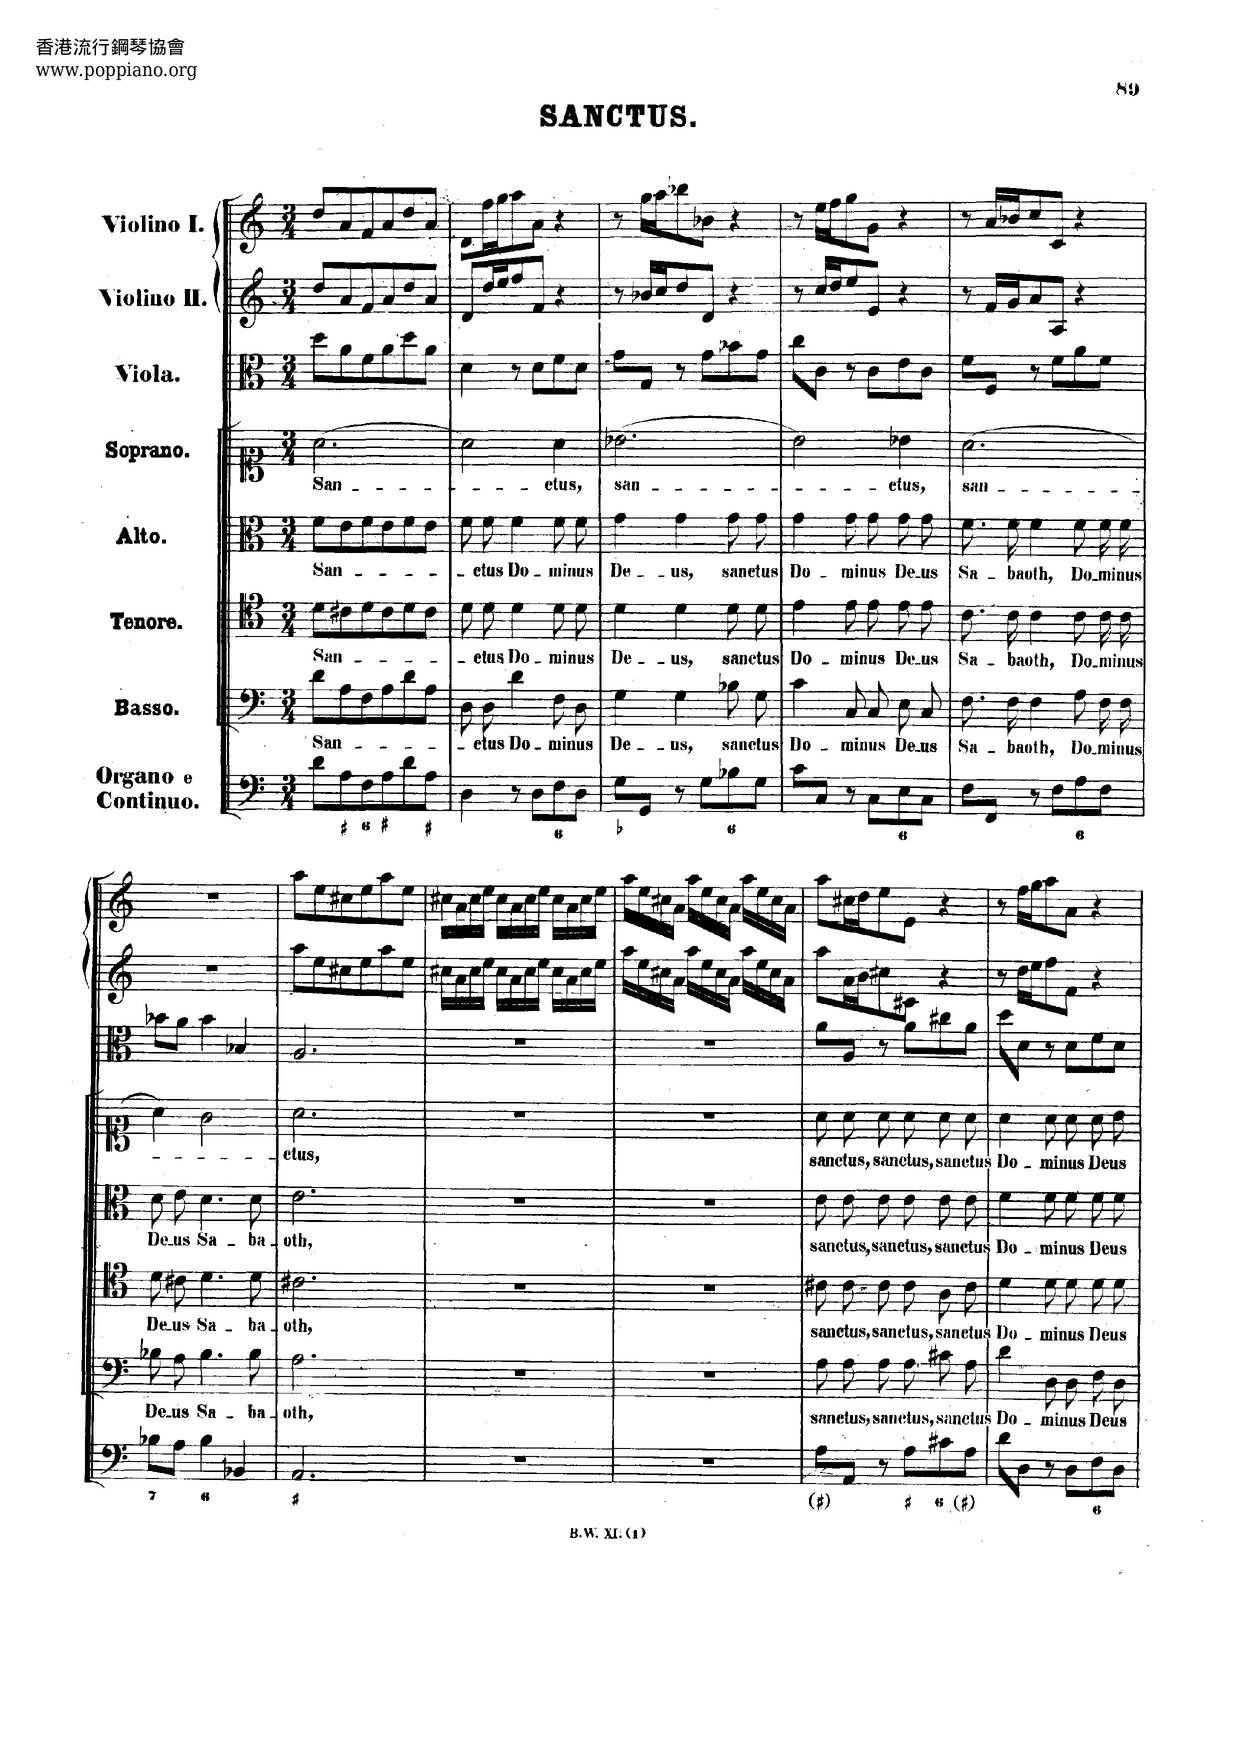 Sanctus In D Minor, BWV 239 Score